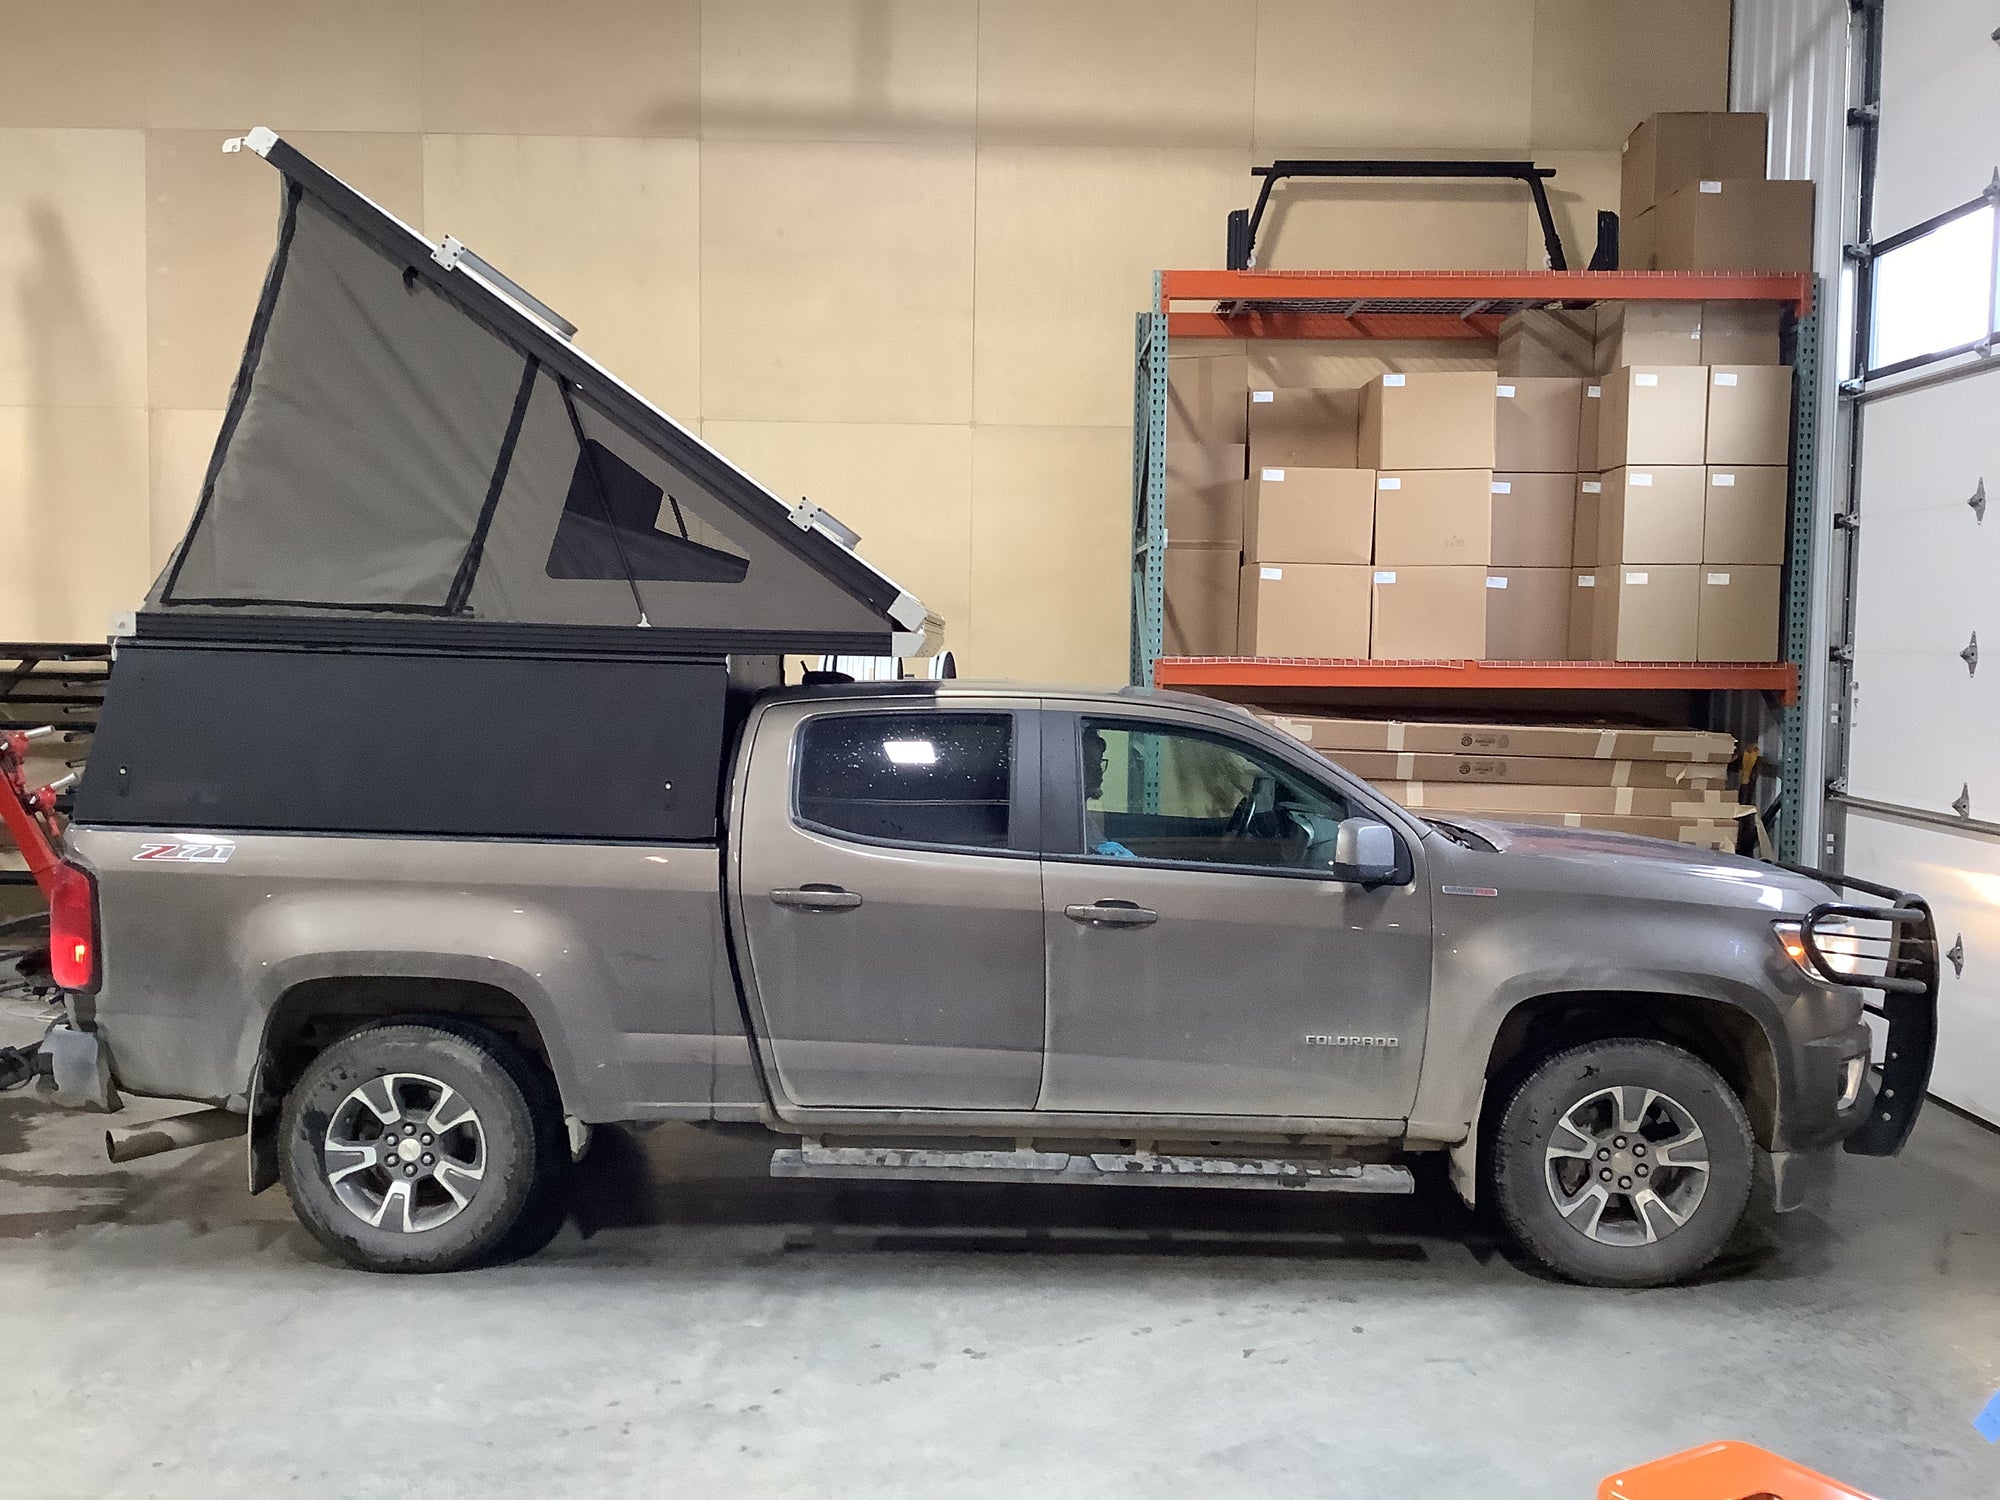 2017 Chevrolet Colorado Camper - Build #2877